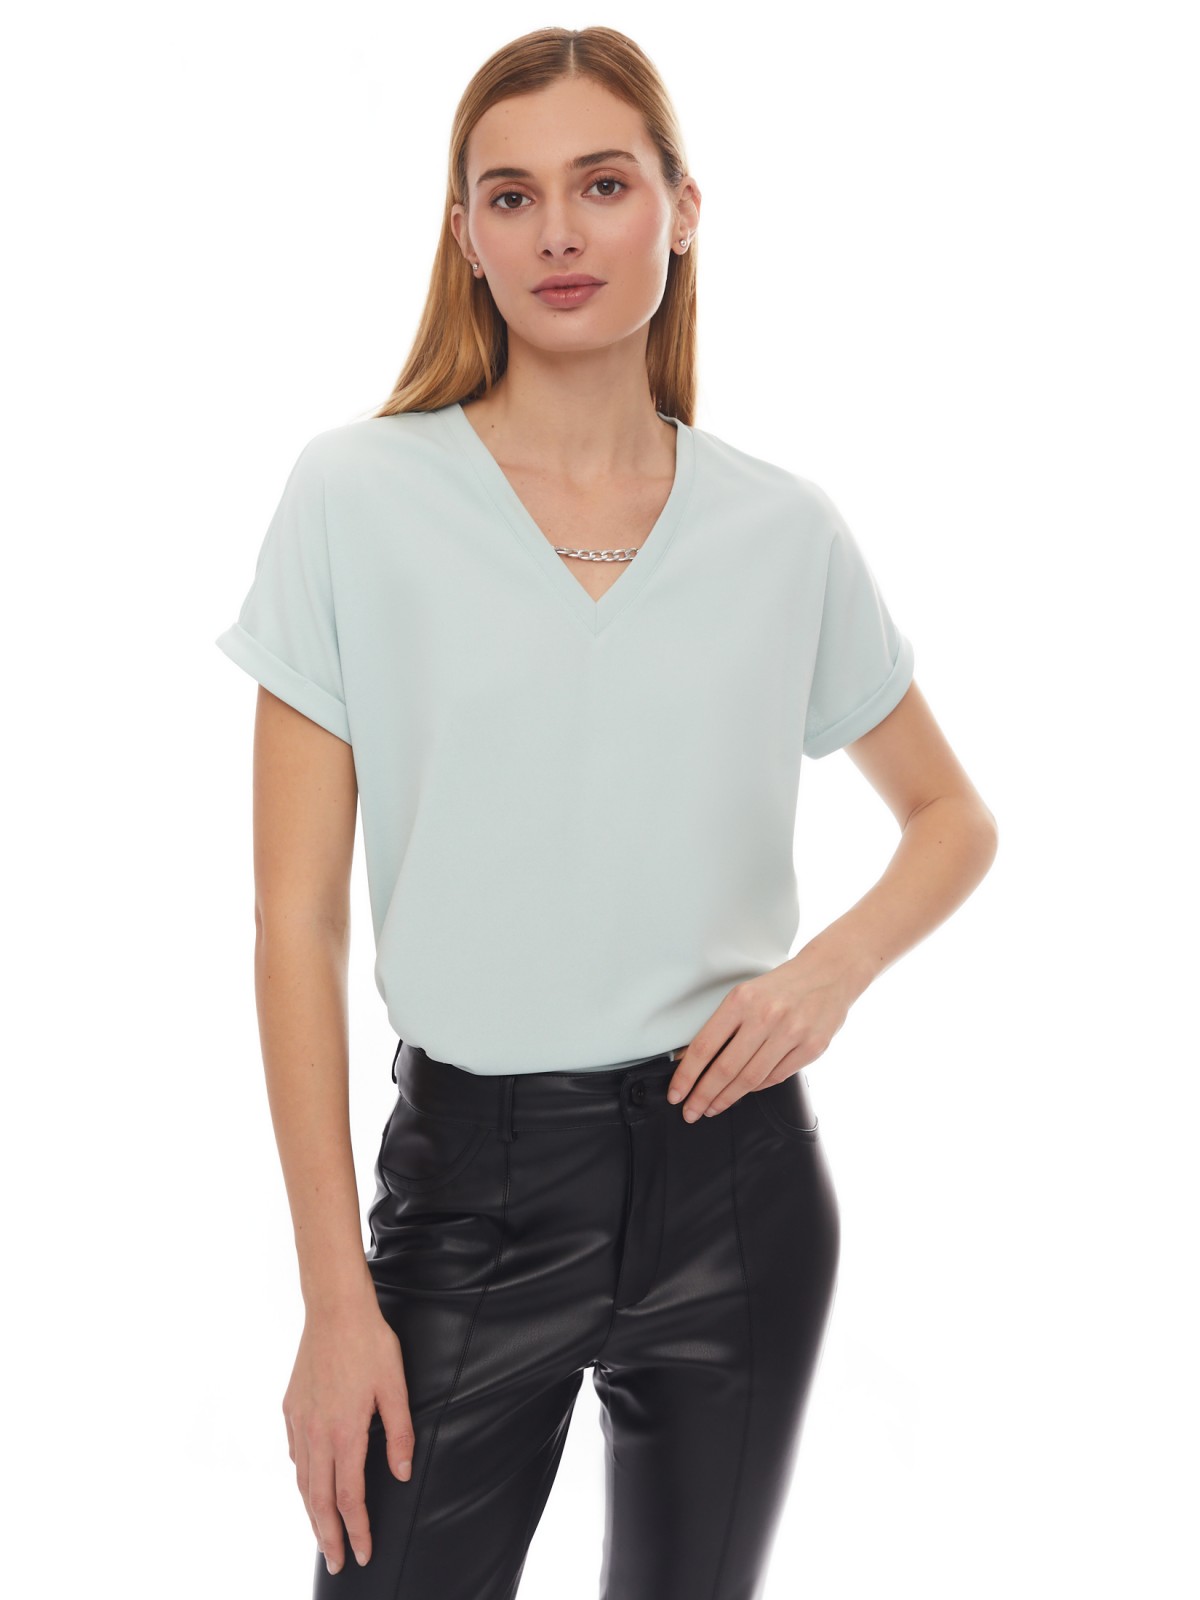 Блузка-футболка с V-образным вырезом и цепочкой zolla 024133226533, цвет мятный, размер XS